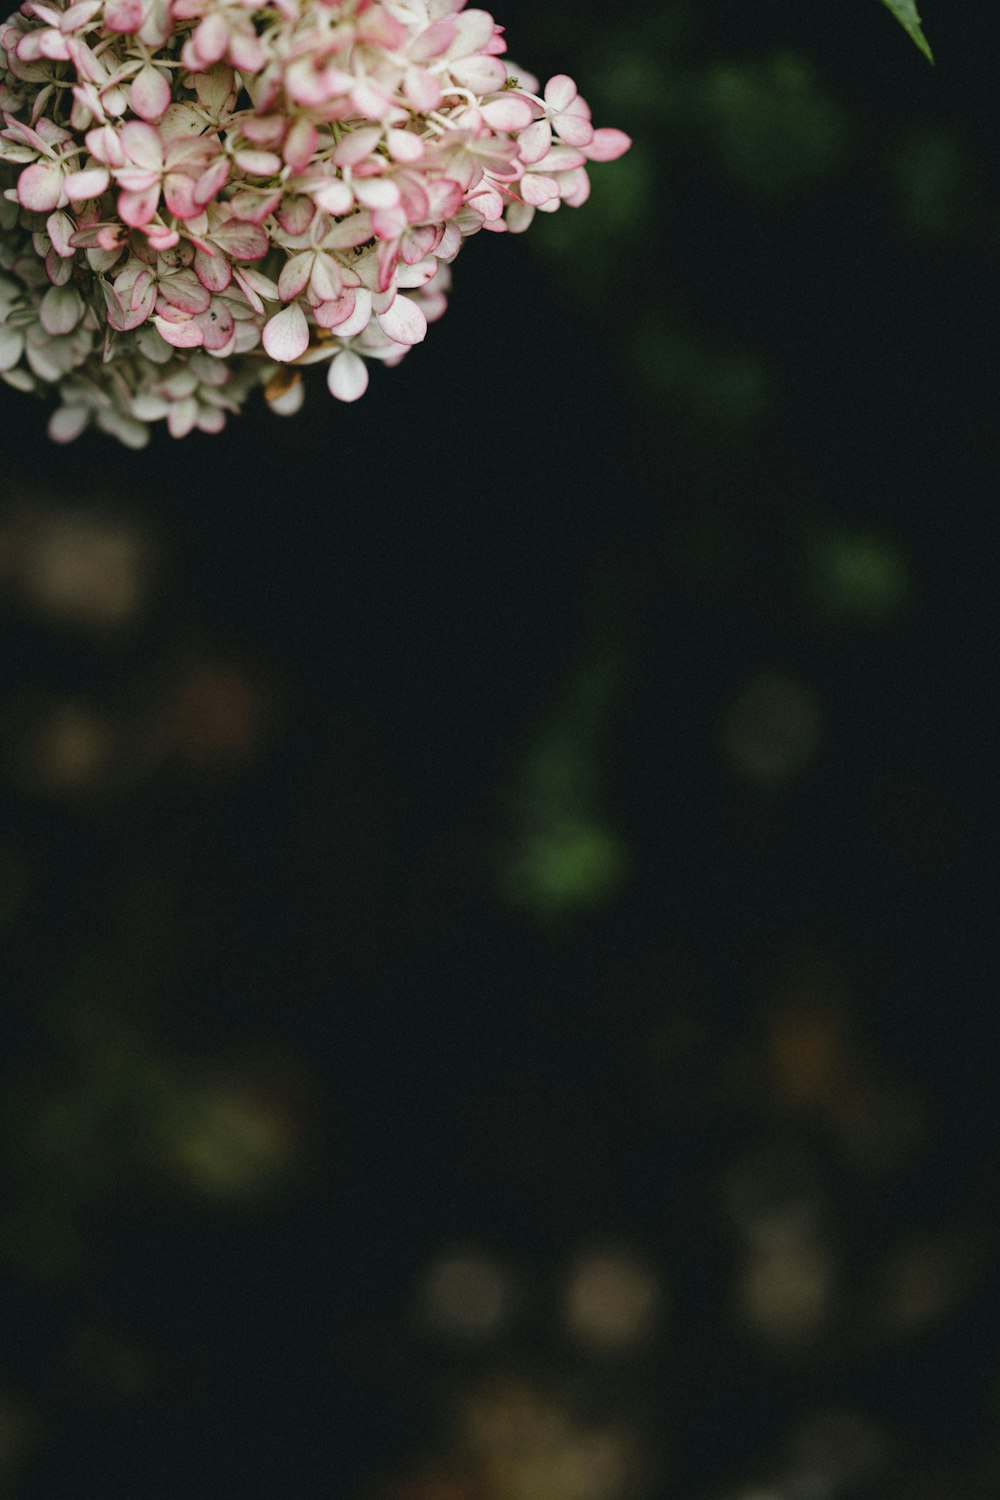 flor blanca y rosada en fotografía de primer plano